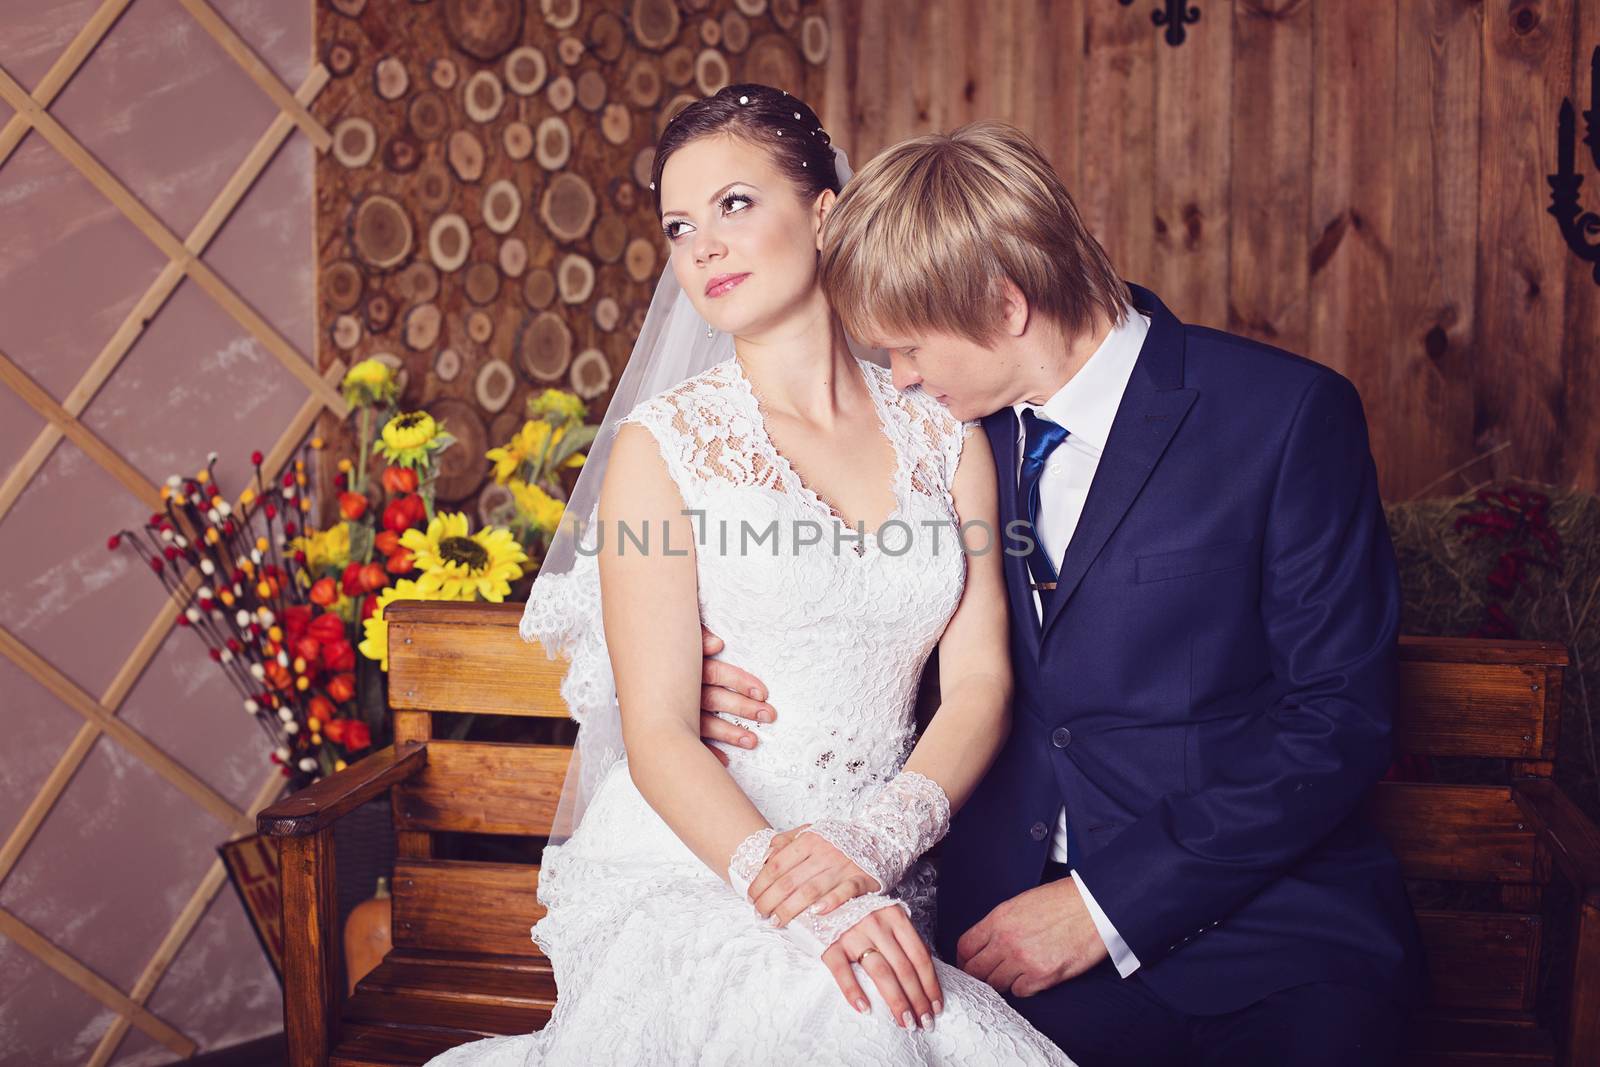 Photo of happy newlyweds by natazhekova